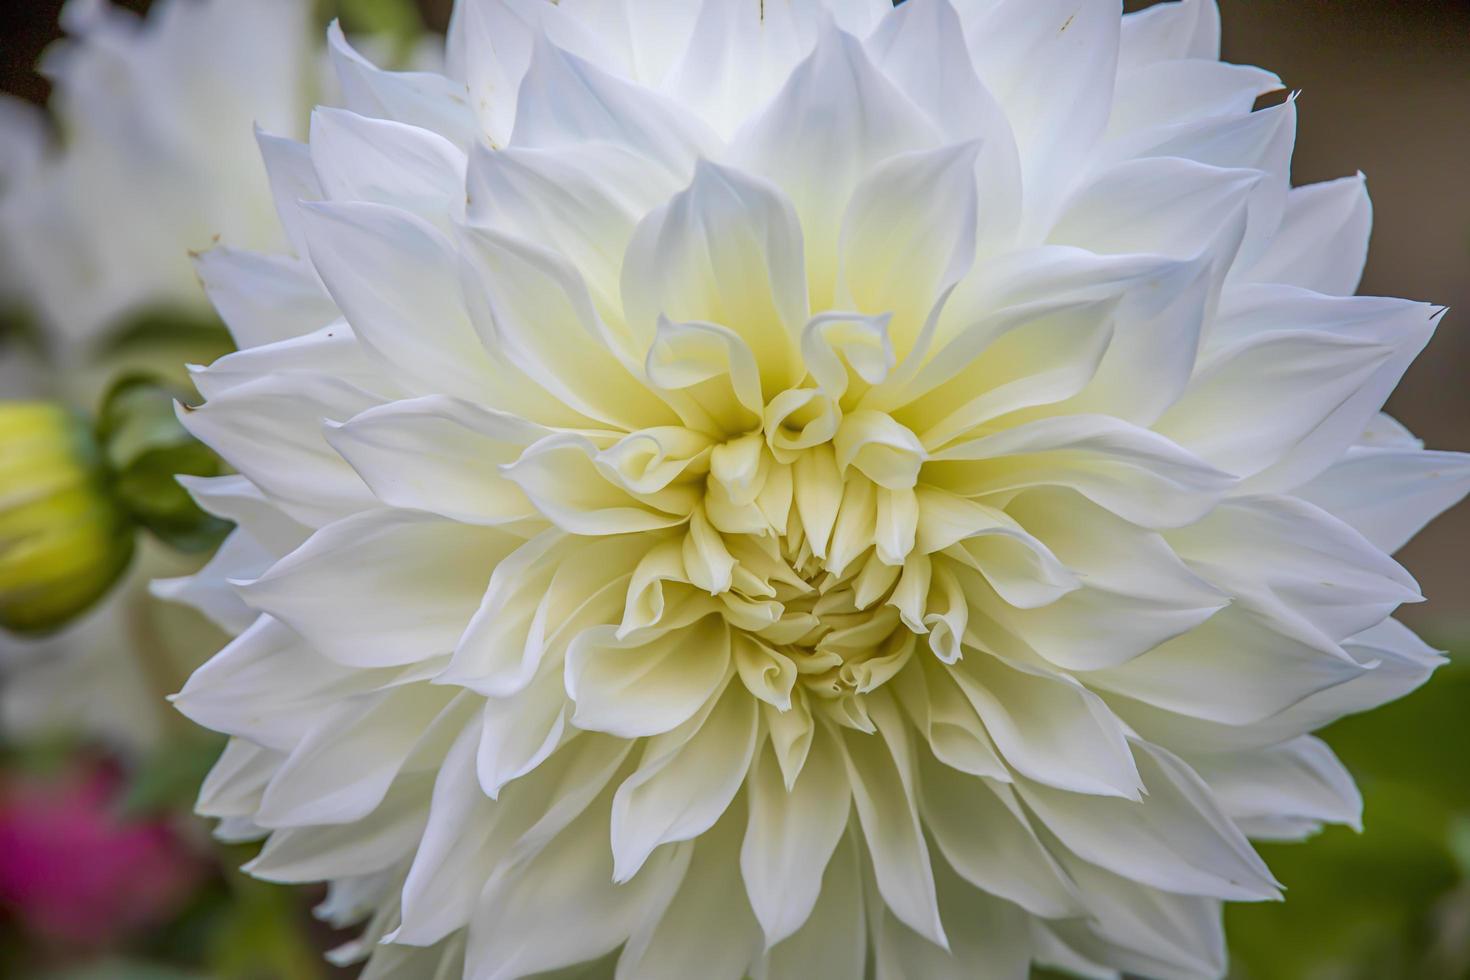 Hermosa flor de dalia blanca que crece en el jardín en primavera 4639853  Foto de stock en Vecteezy